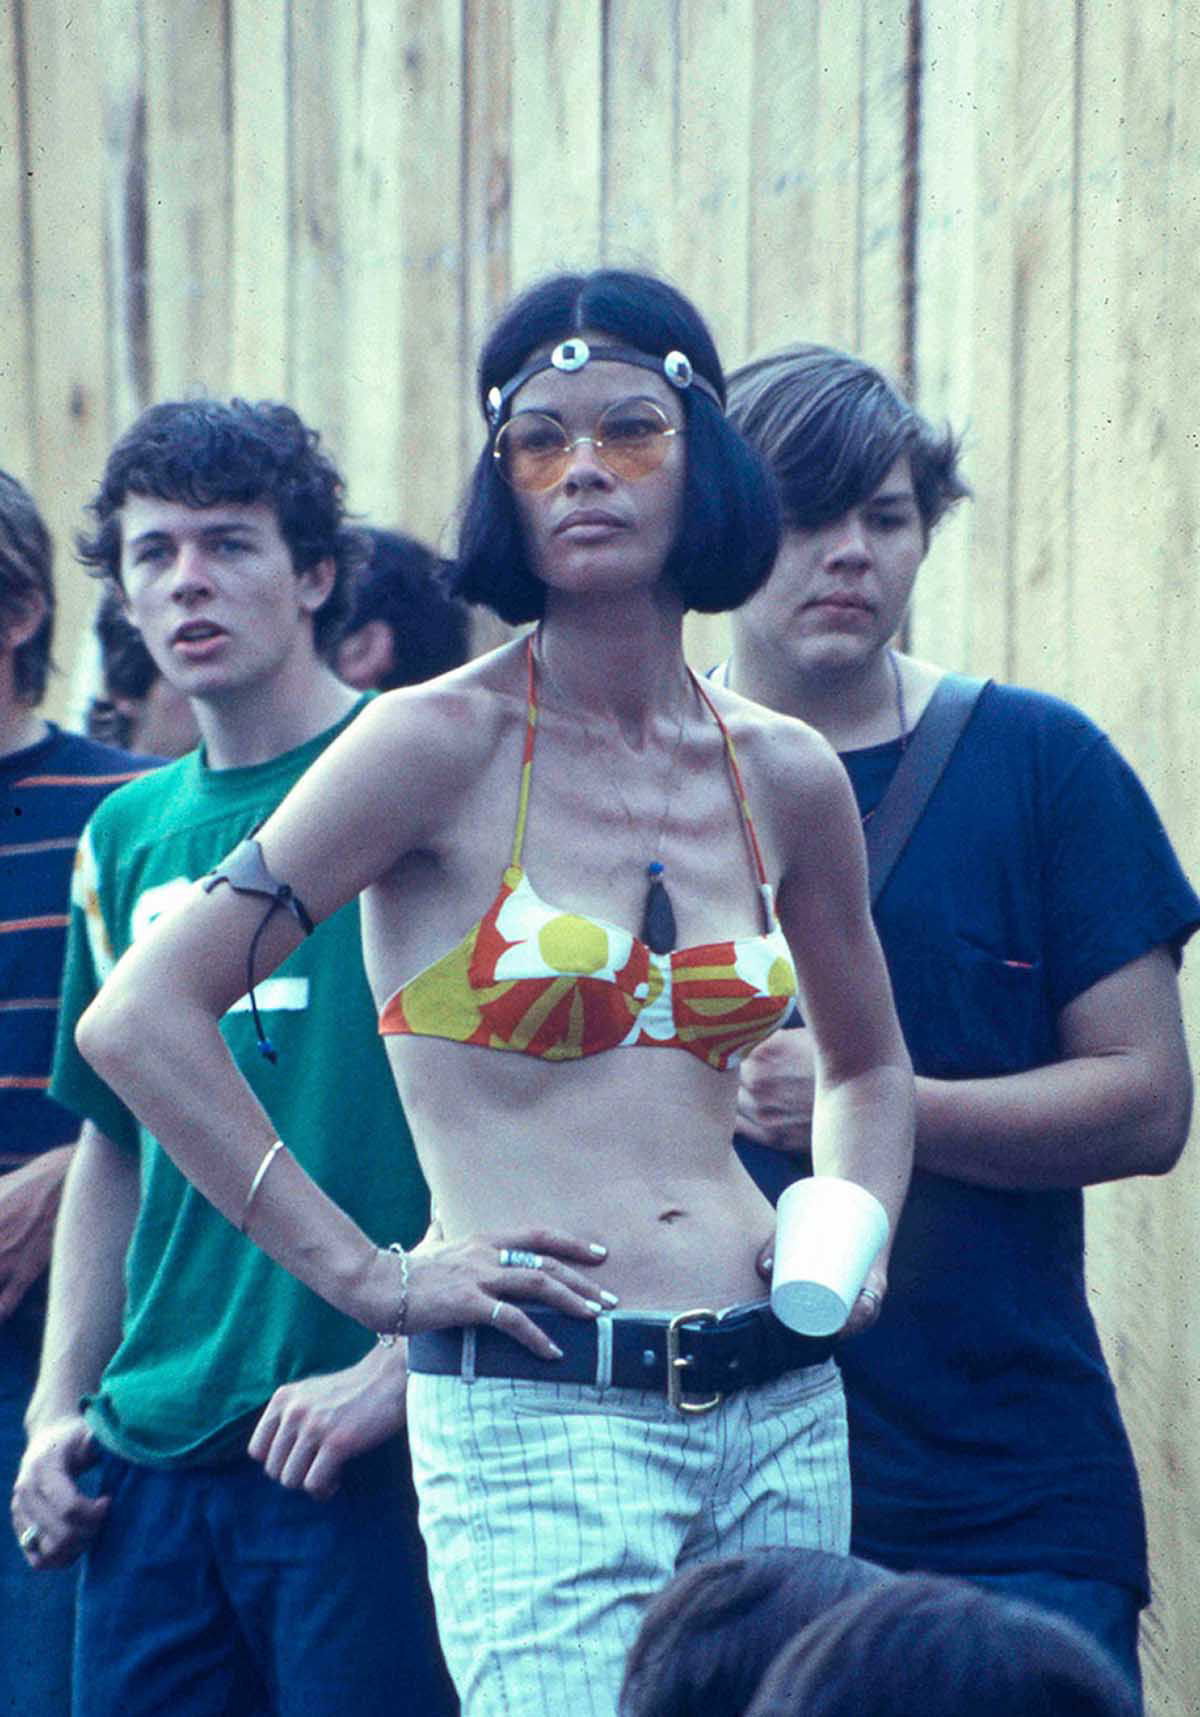 Fotos impressionantes retratam a moda rebelde de Woodstock em 1969 31